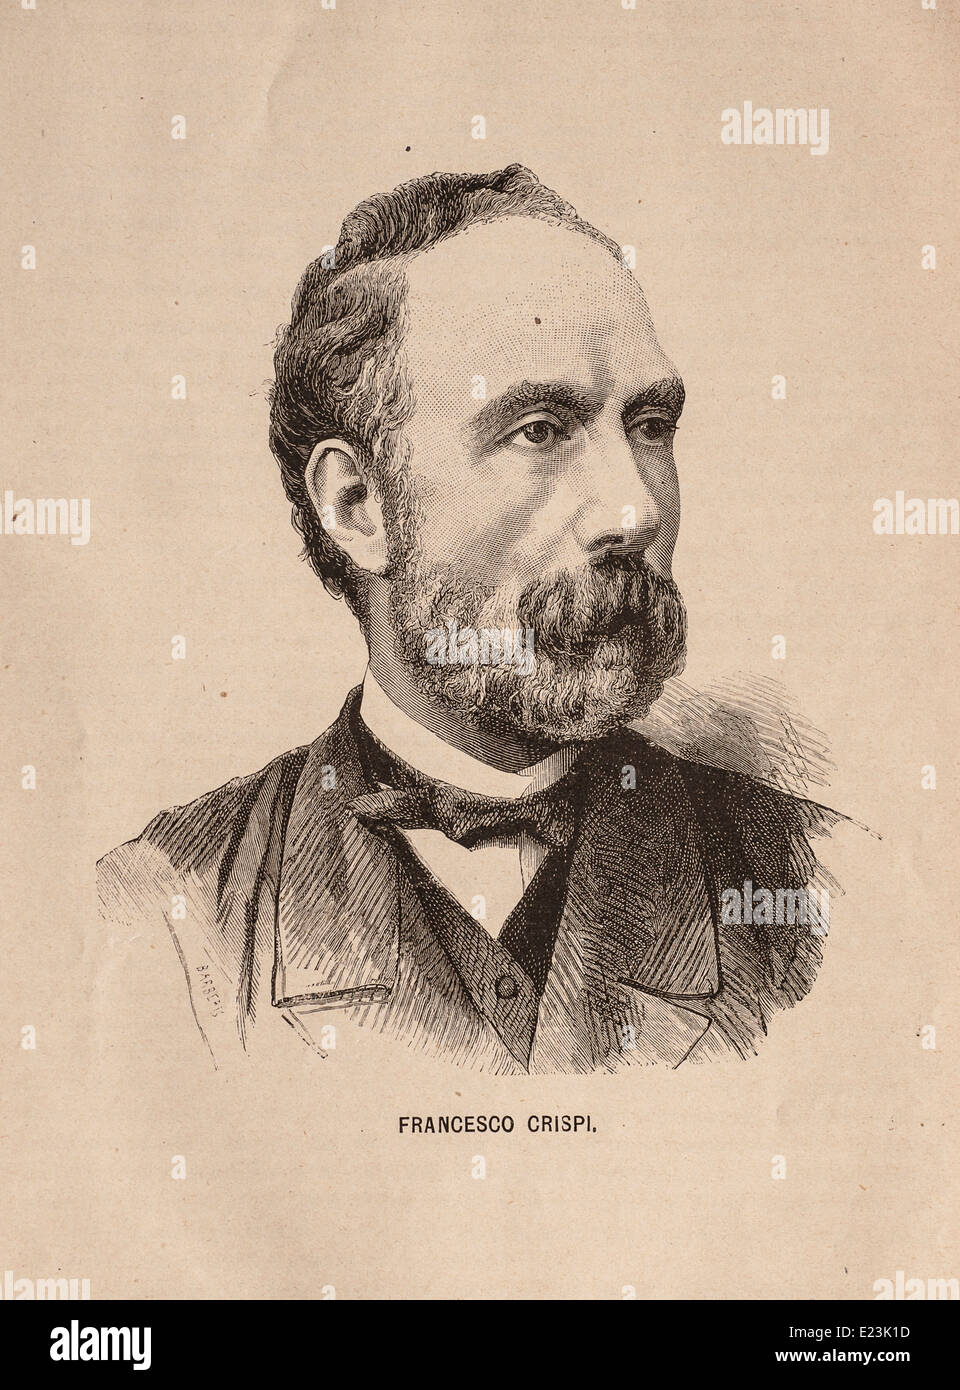 Giuseppe Mazzini du livre de Jessie W. Mario de vie de Mazzini, Portrait de Francesco Crispi Banque D'Images